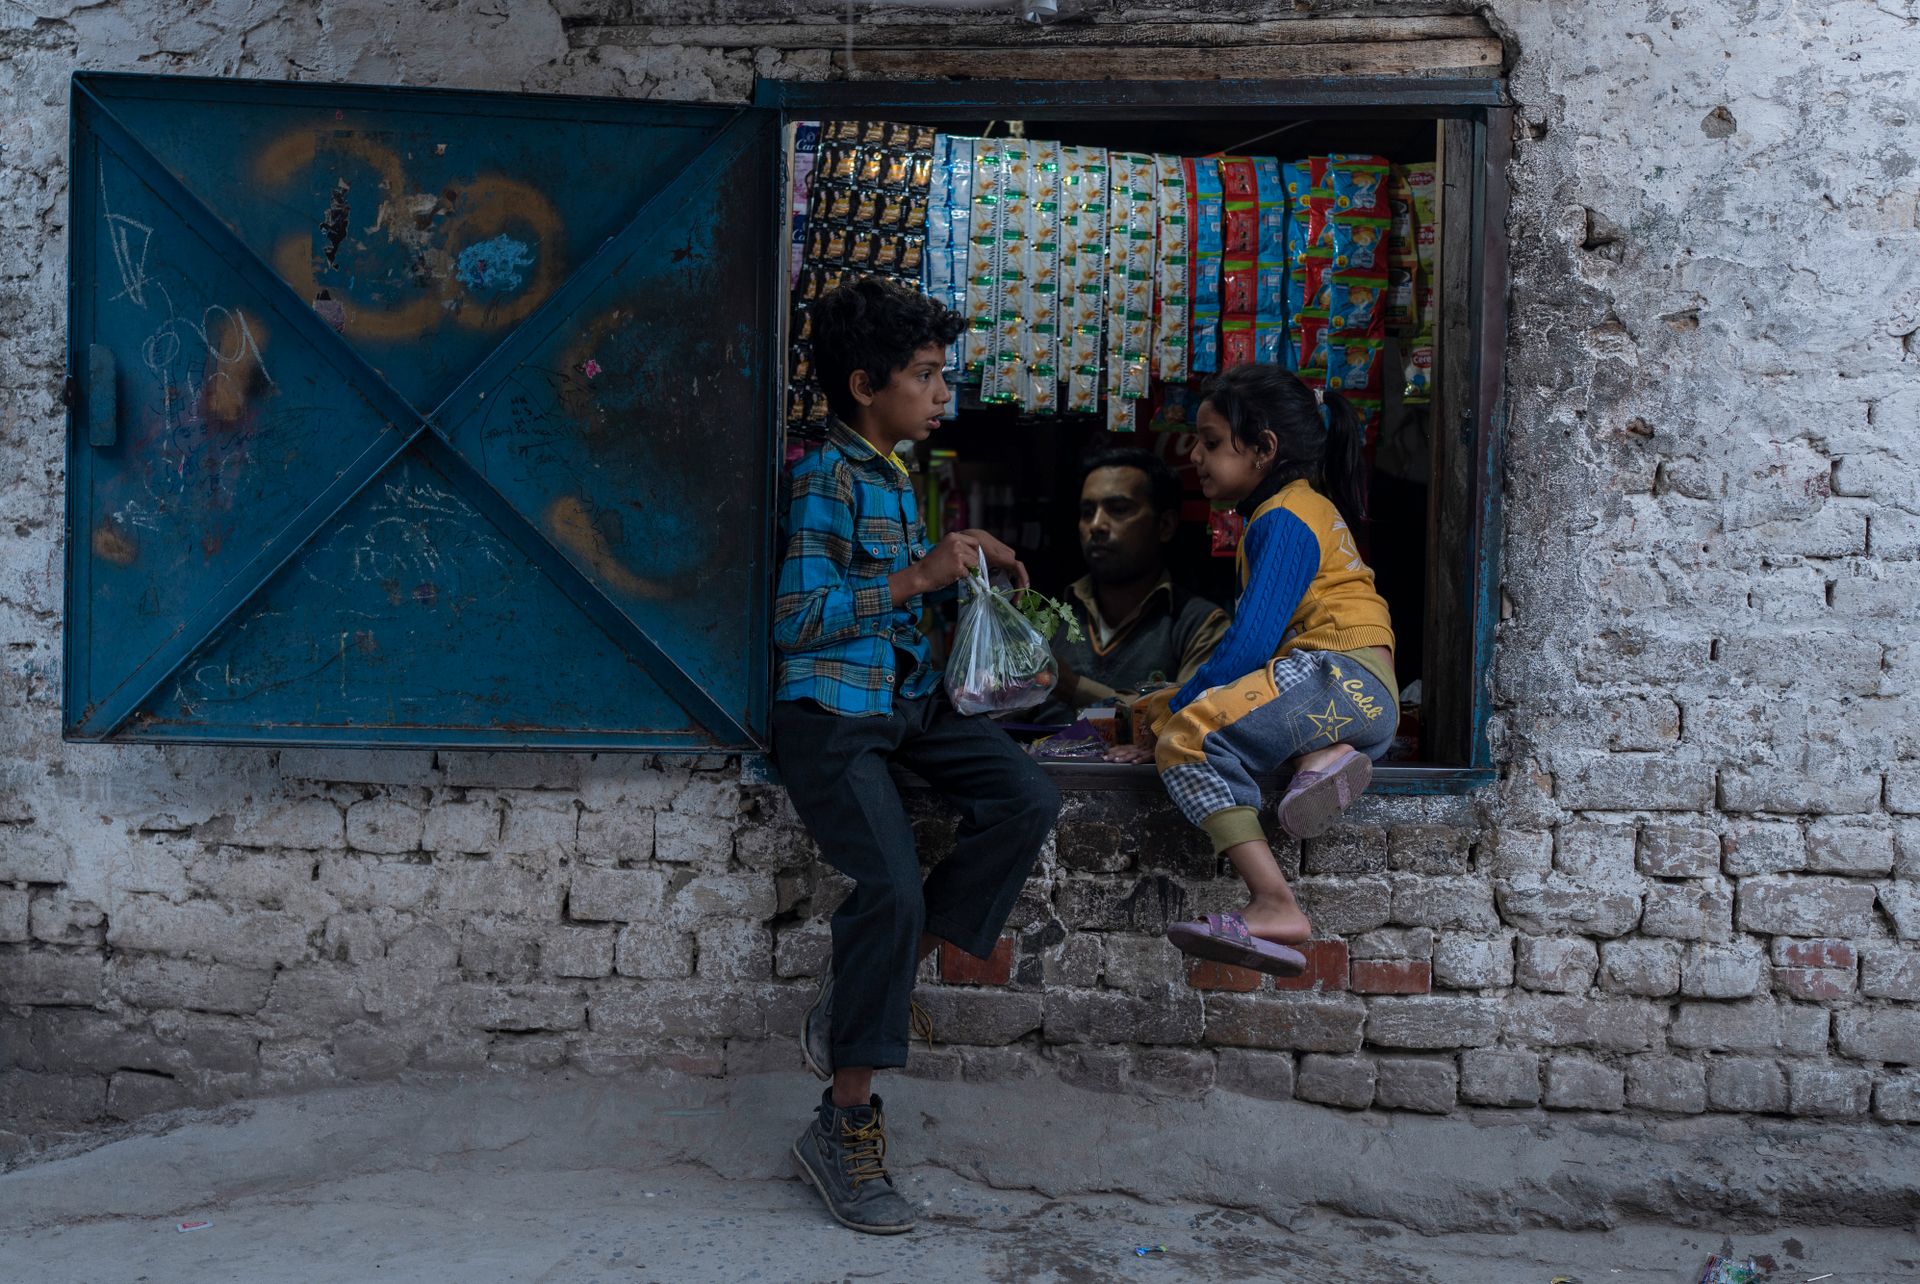 En gutt og jente sitter i et vindu i en liten kiosk. Gutten holder en pose med godteri som har akkurat har kjøpt. 